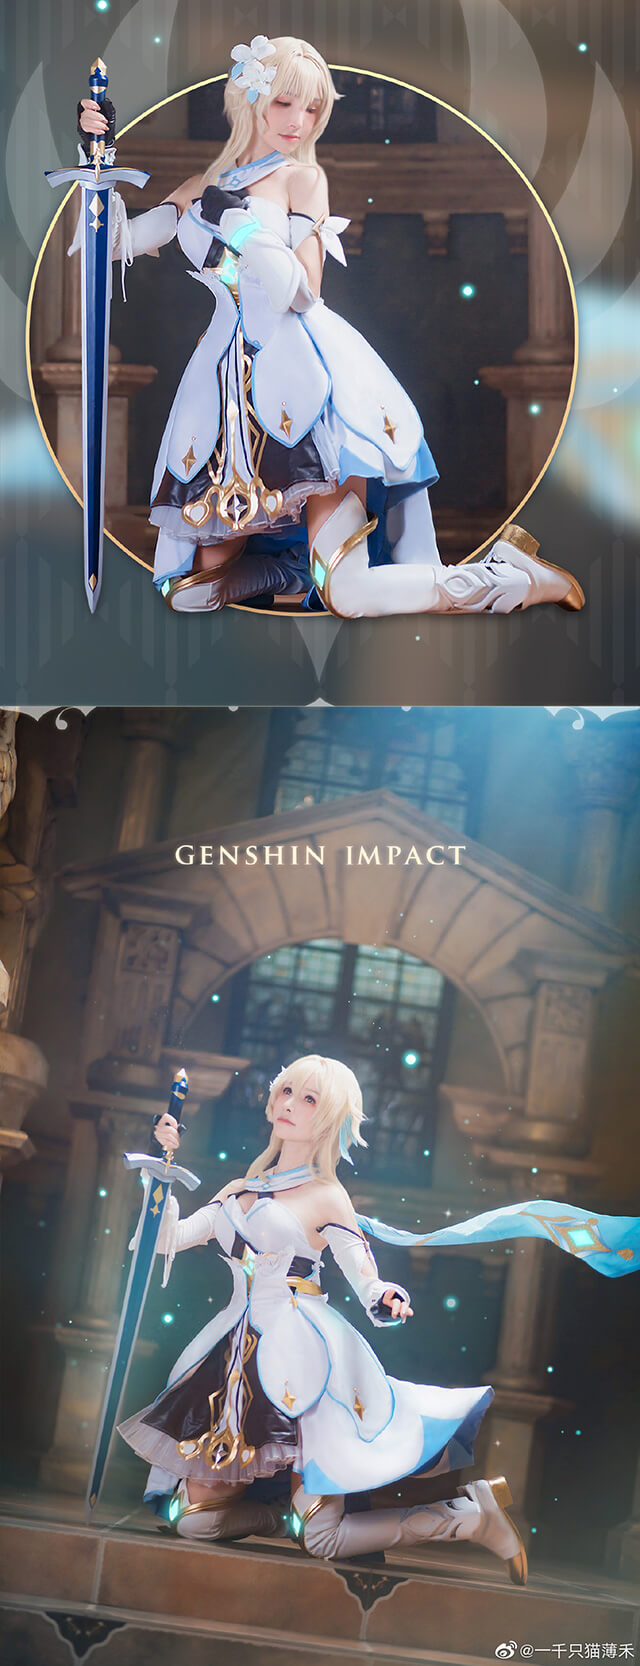 Nóng bỏng tay với bộ ảnh cosplay Lumine trong Genshin Impact - Game thế giới mở hot nhất hiện nay - Ảnh 6.